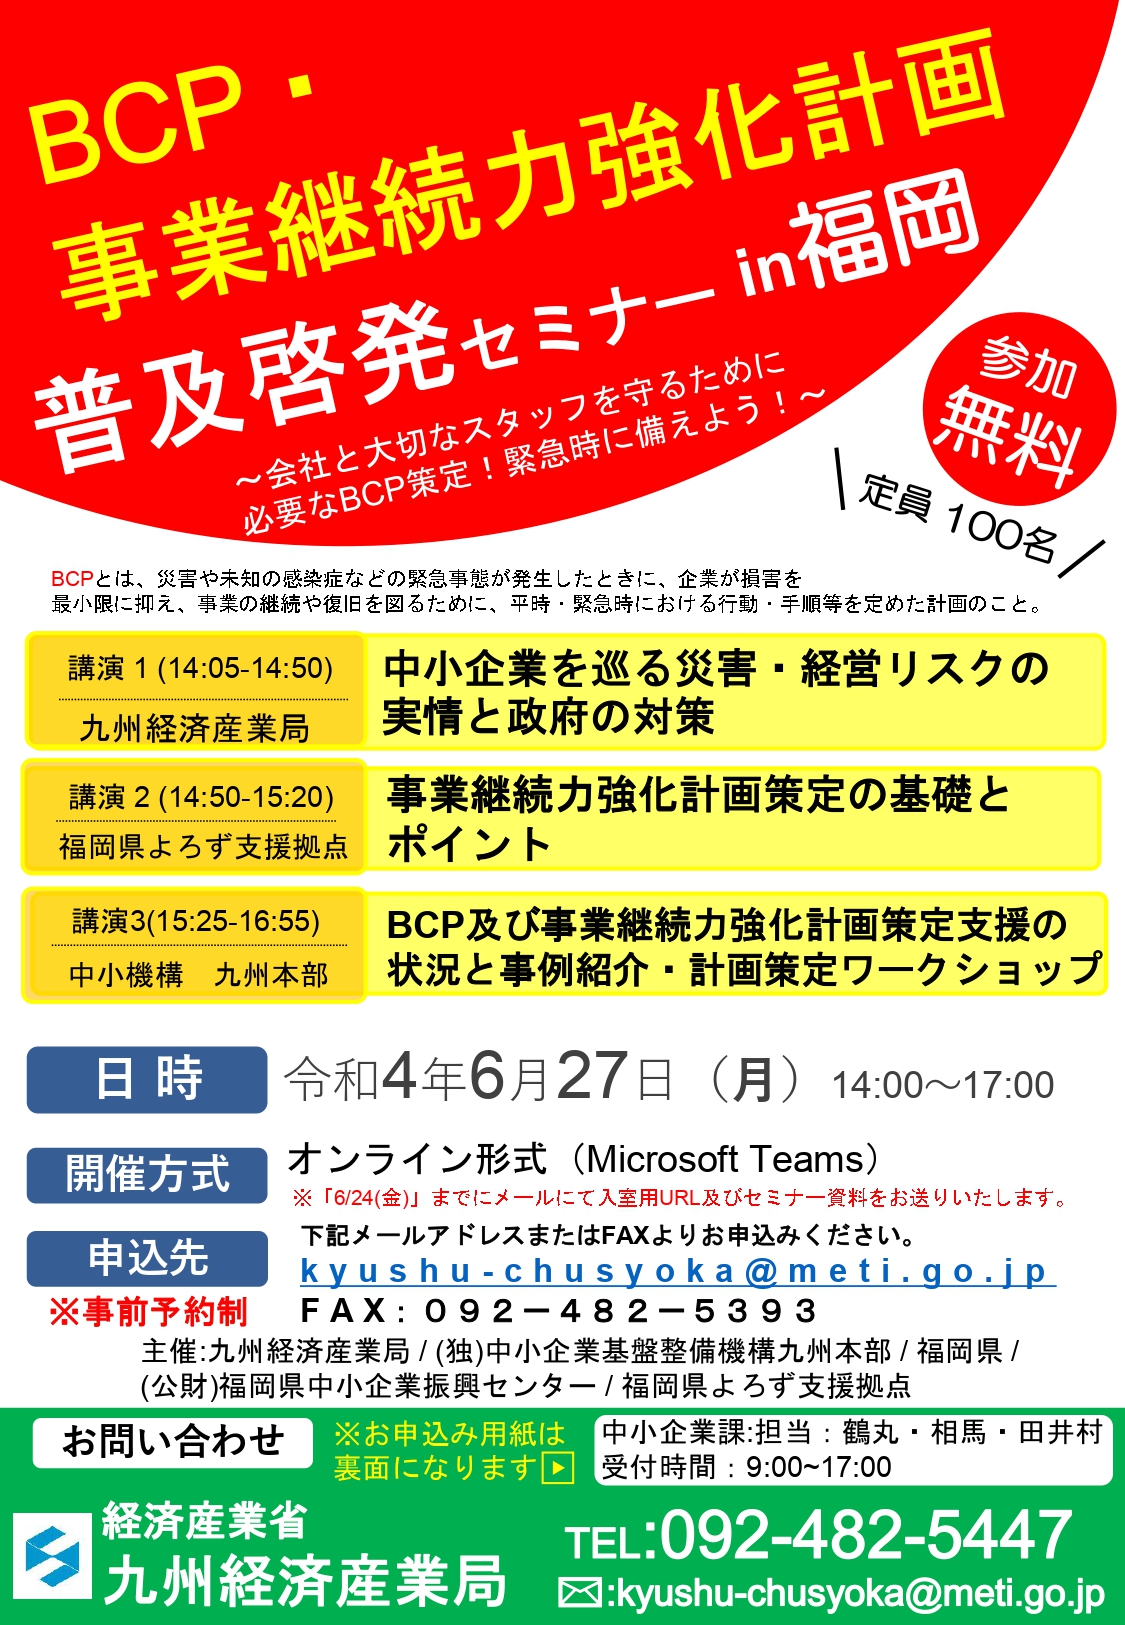 【6月27日】「BCP・事業継続力強化計画普及啓発セミナーin福岡」の開催について 